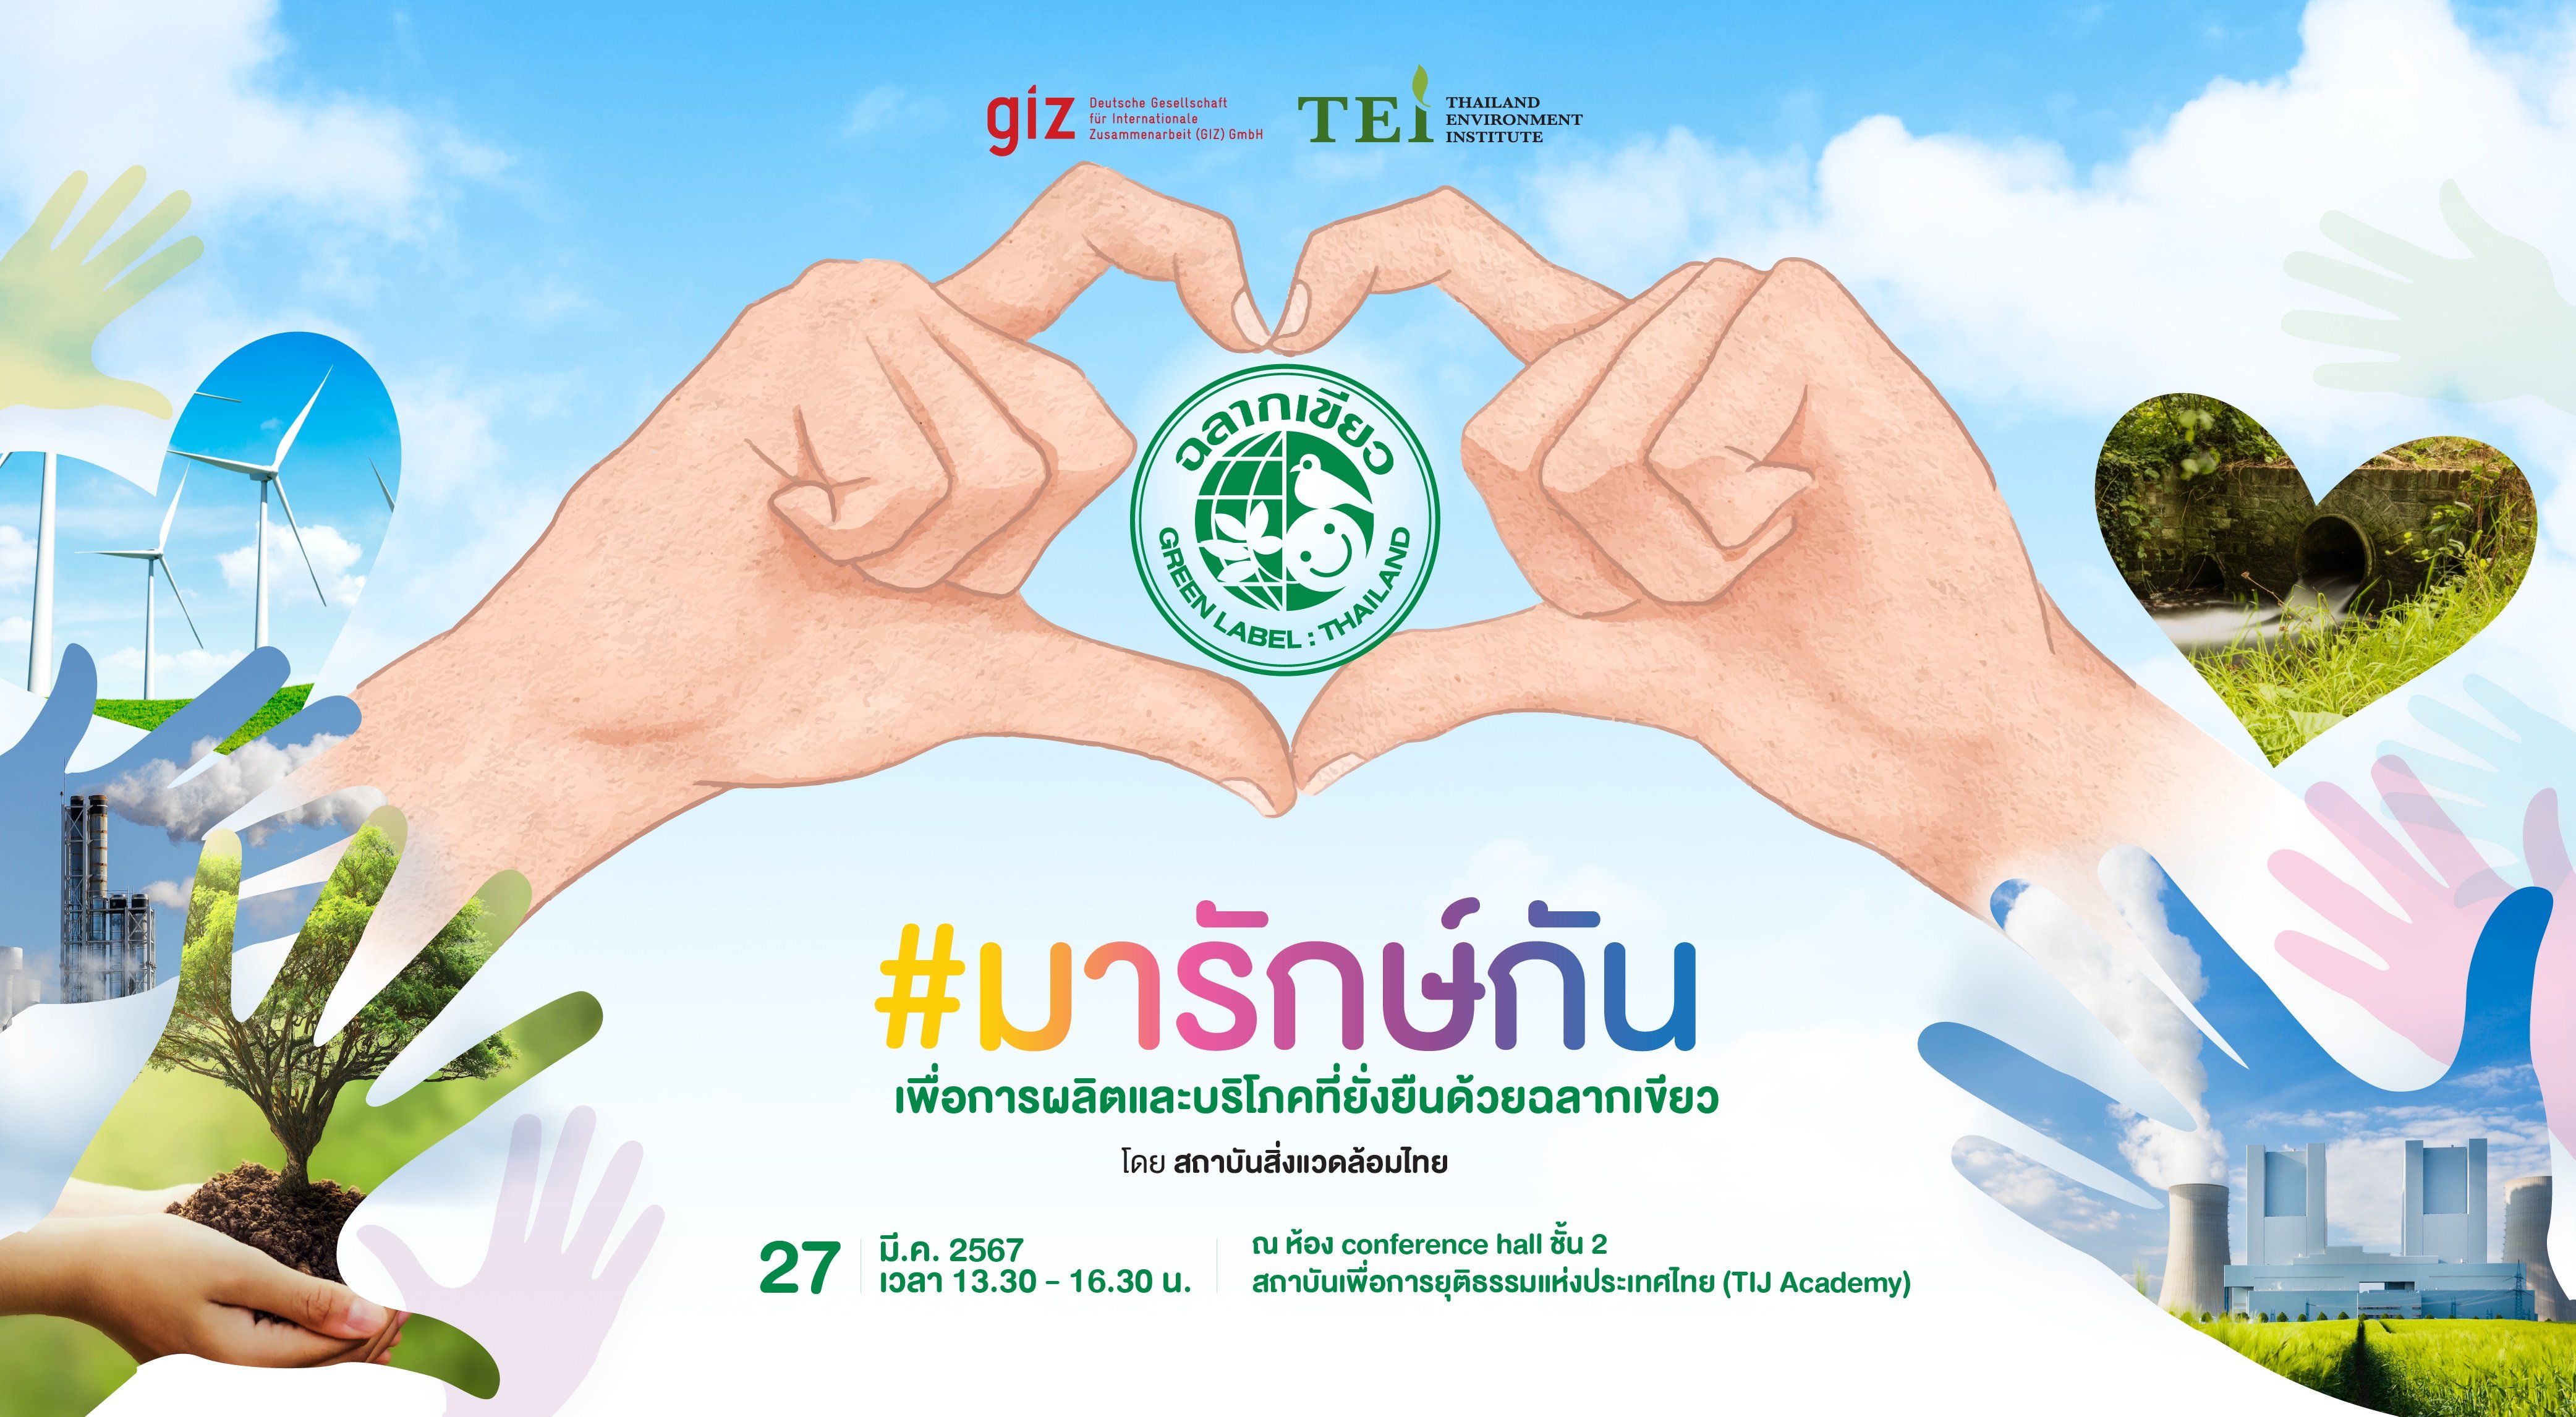 สถาบันสิ่งแวดล้อมไทย ชวนผู้ประกอบการ #มารักษ์กัน ยั่งยืนด้วย “ฉลากเขียว”